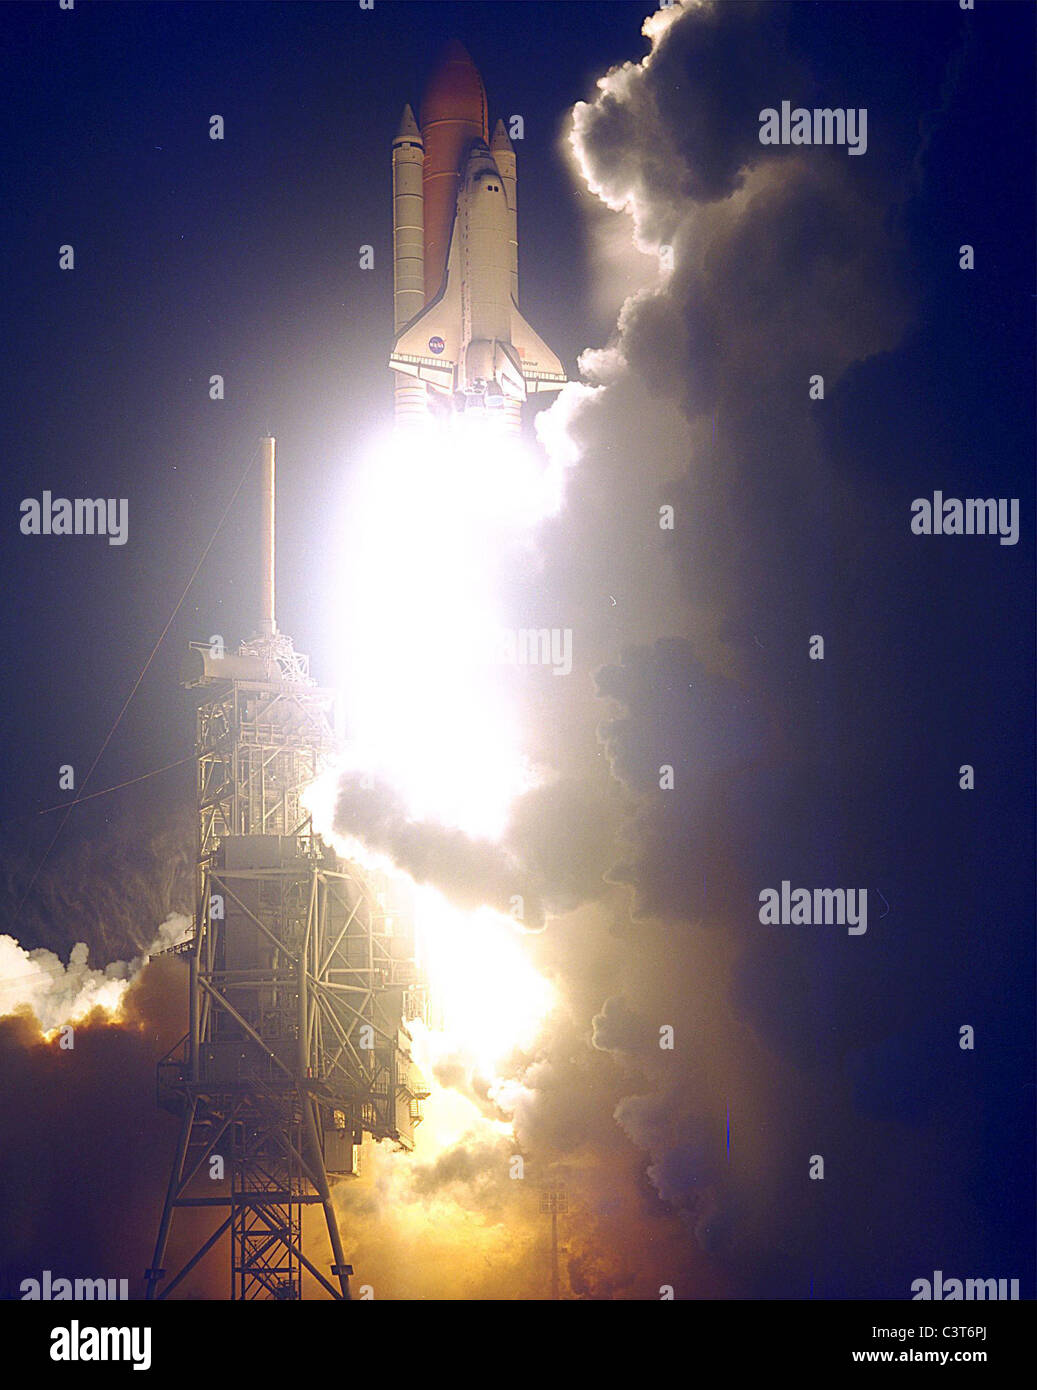 Endeavour eleva el transbordador espacial Endeavour se ilumina el cielo de la noche como se embarca en la primera misión estadounidense, STS-88, se dedica al ensamblaje de la estación espacial internacional. liftoff en dec. 4 desde la plataforma de lanzamiento 39a fue a las 3:35:34 a.m. EST. Durante los casi 12 días de la misión, los seis miembros de la tripulación se acopla en el espacio, los dos primeros elementos de la estación espacial internacional el módulo de control zarya en órbita con el módulo de conexión unity llevada por empresa. Los miembros de la tripulación son el comandante Robert d. Foto de stock